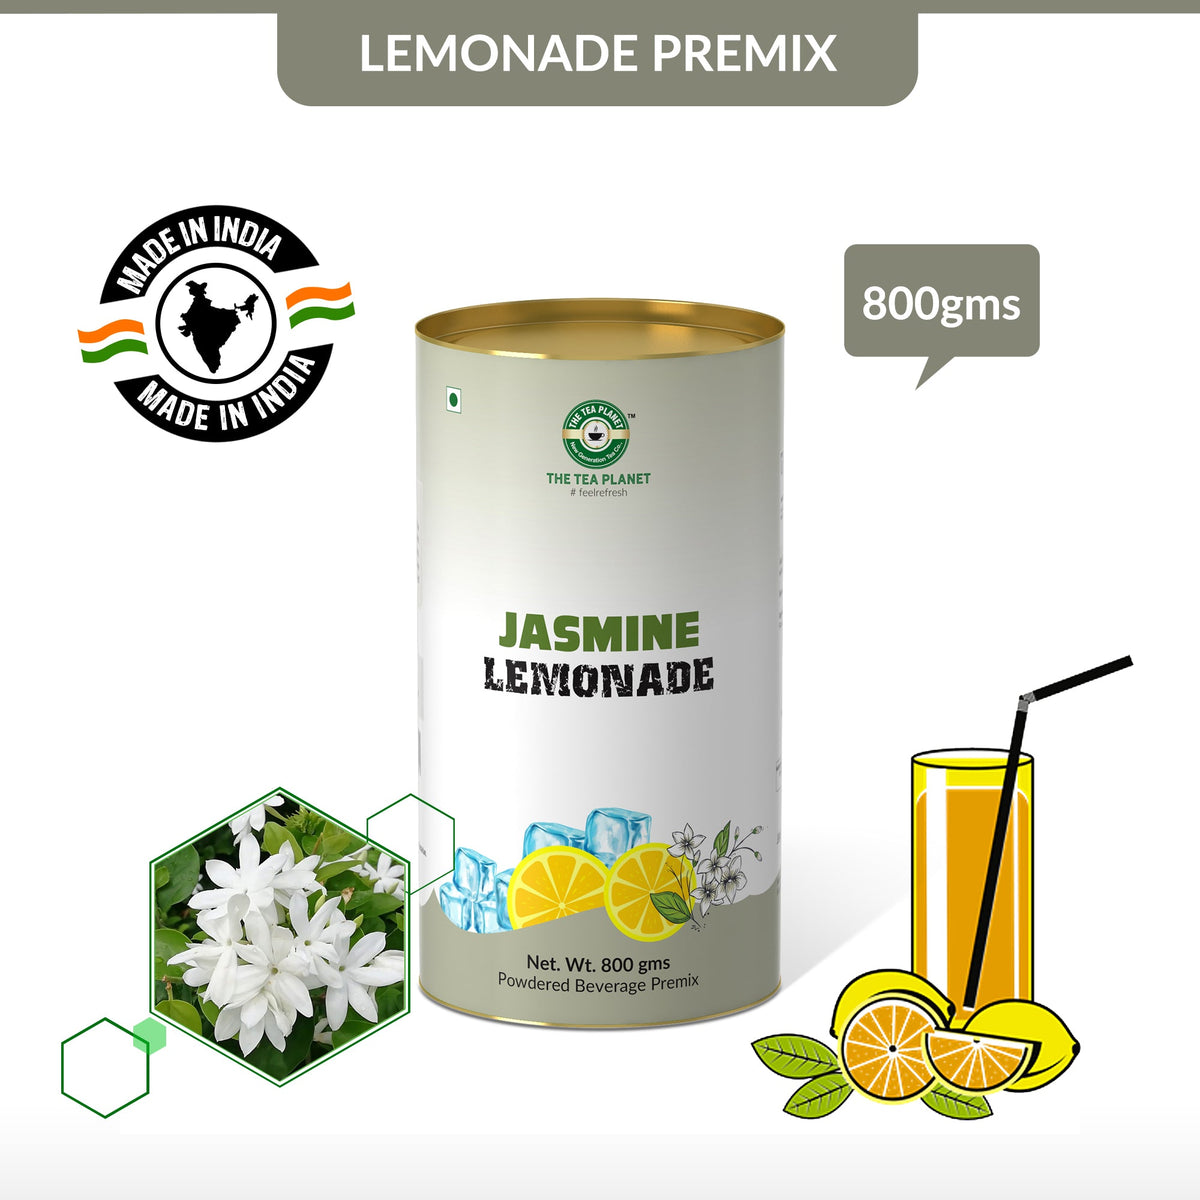 Jasmine Lemonade Premix